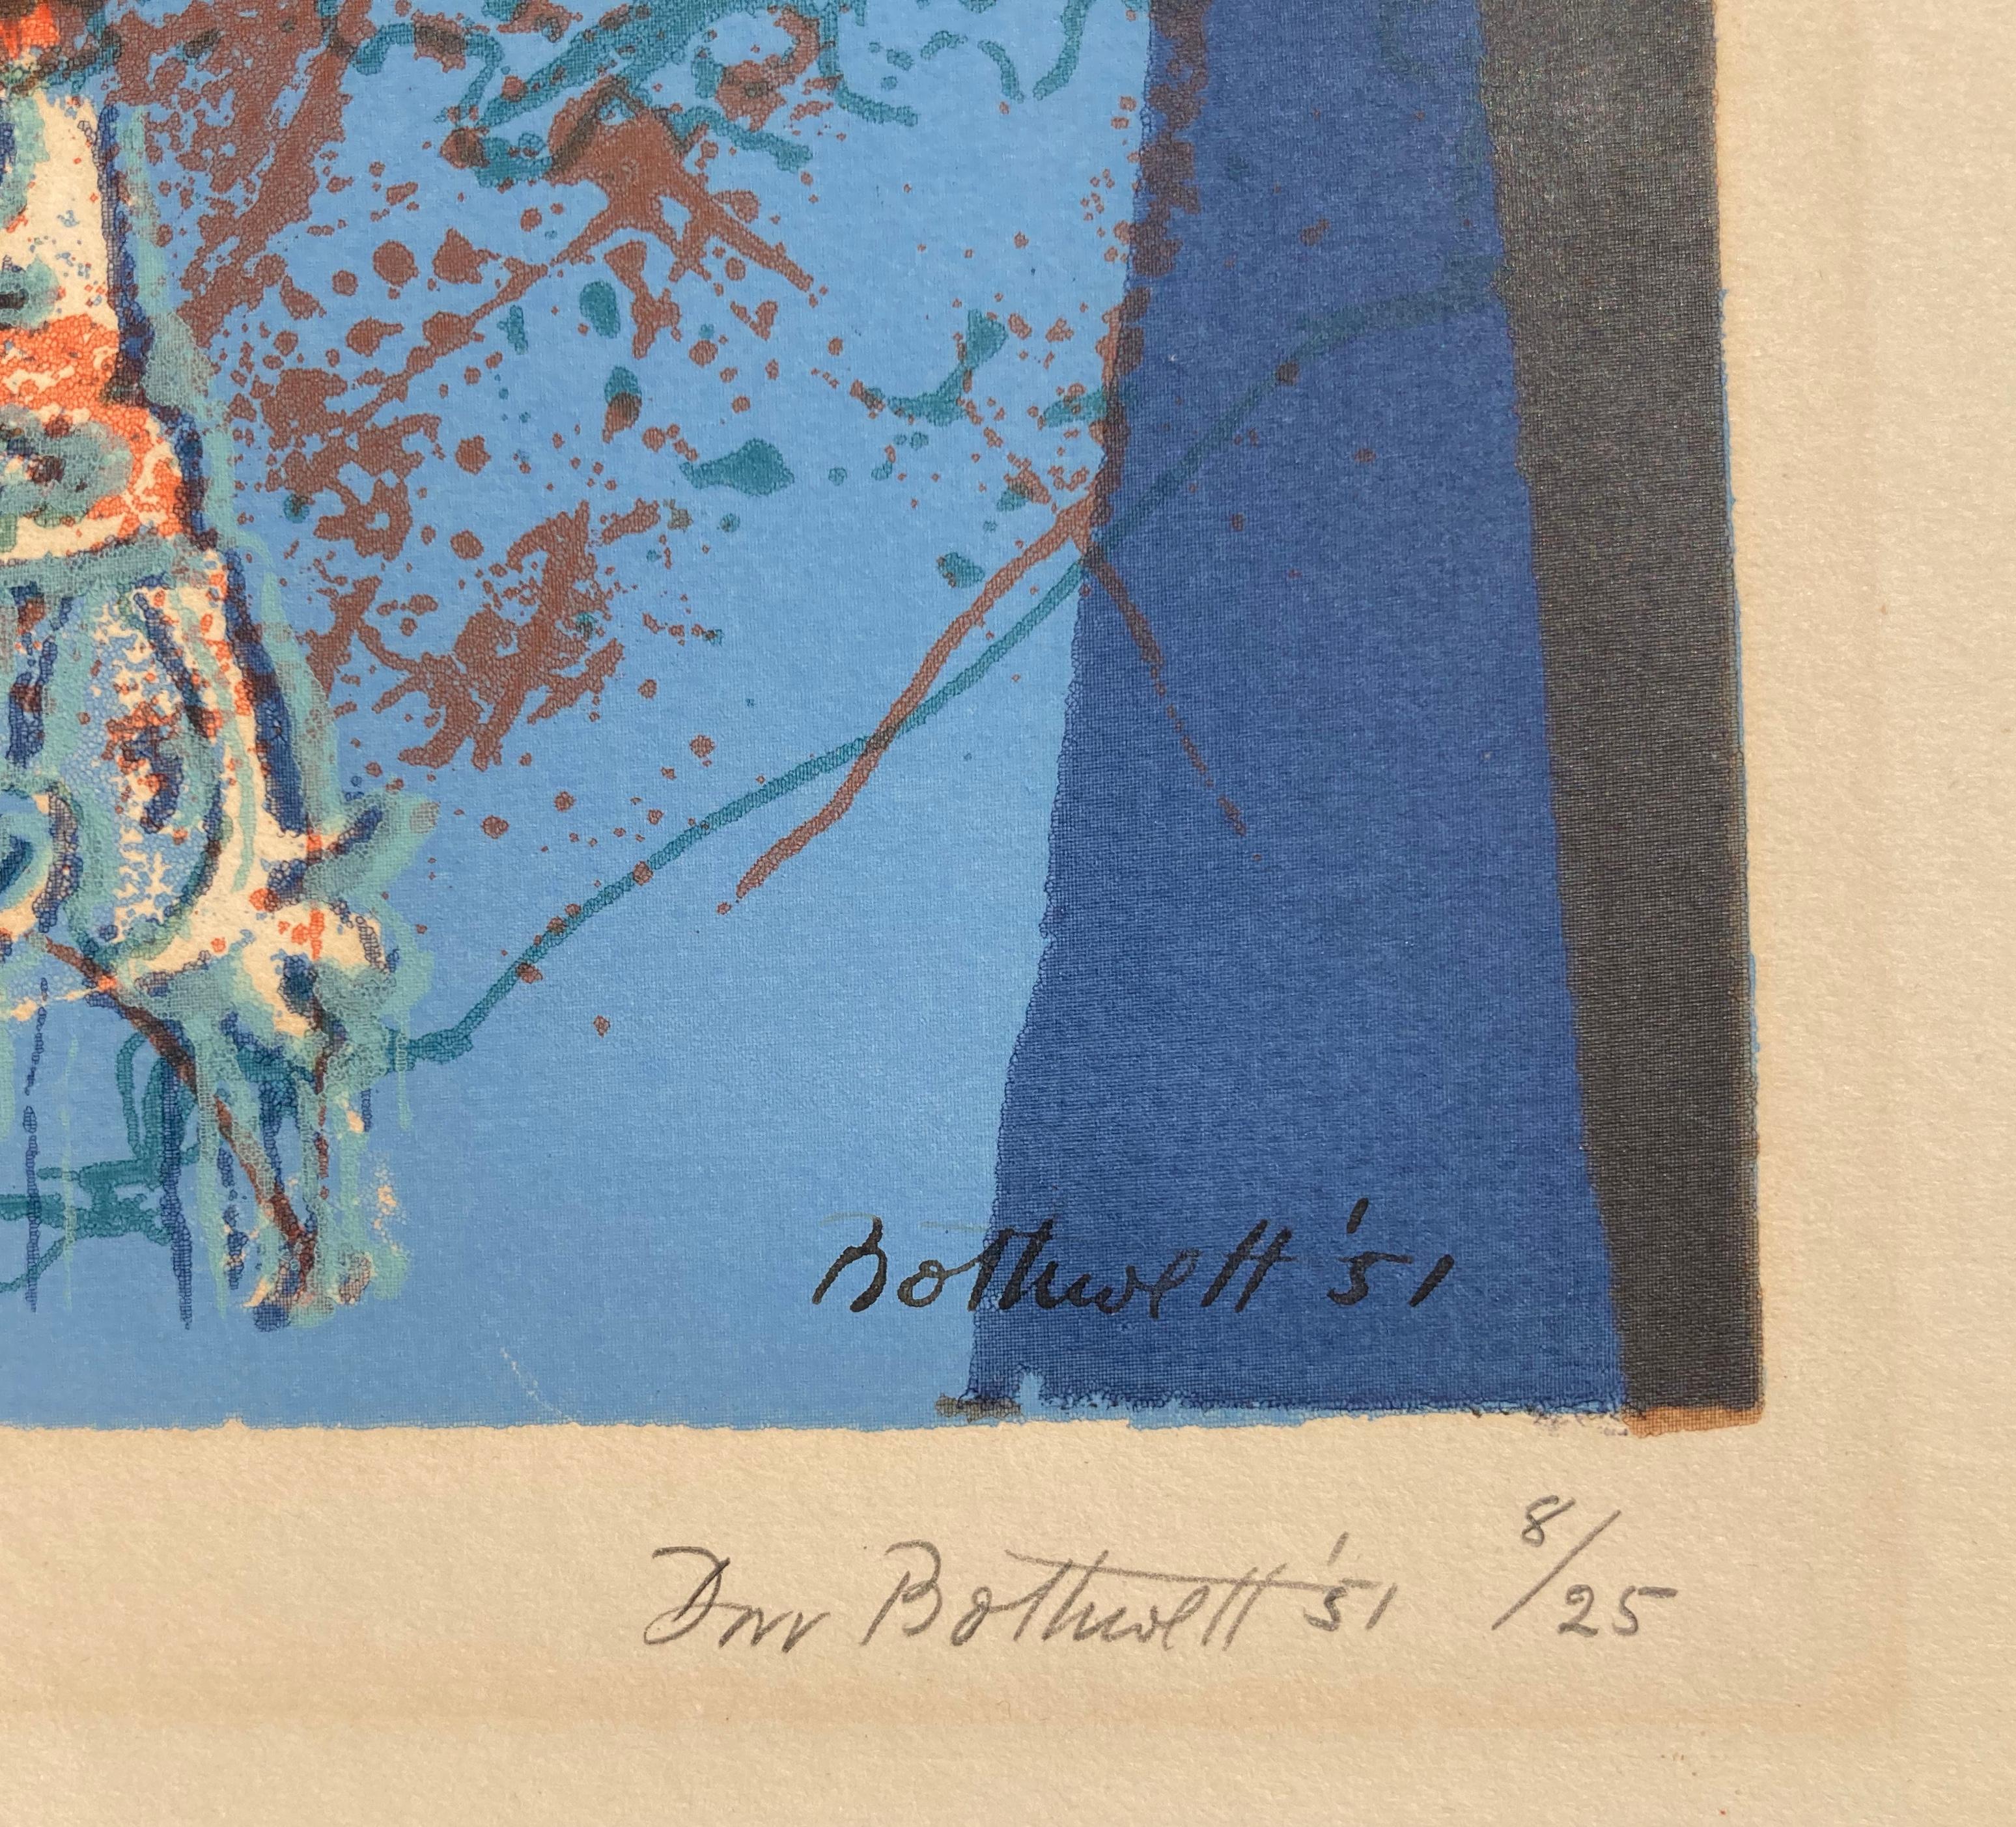 MALLORCA (Abstrakter Expressionismus), Print, von Dorr Bothwell